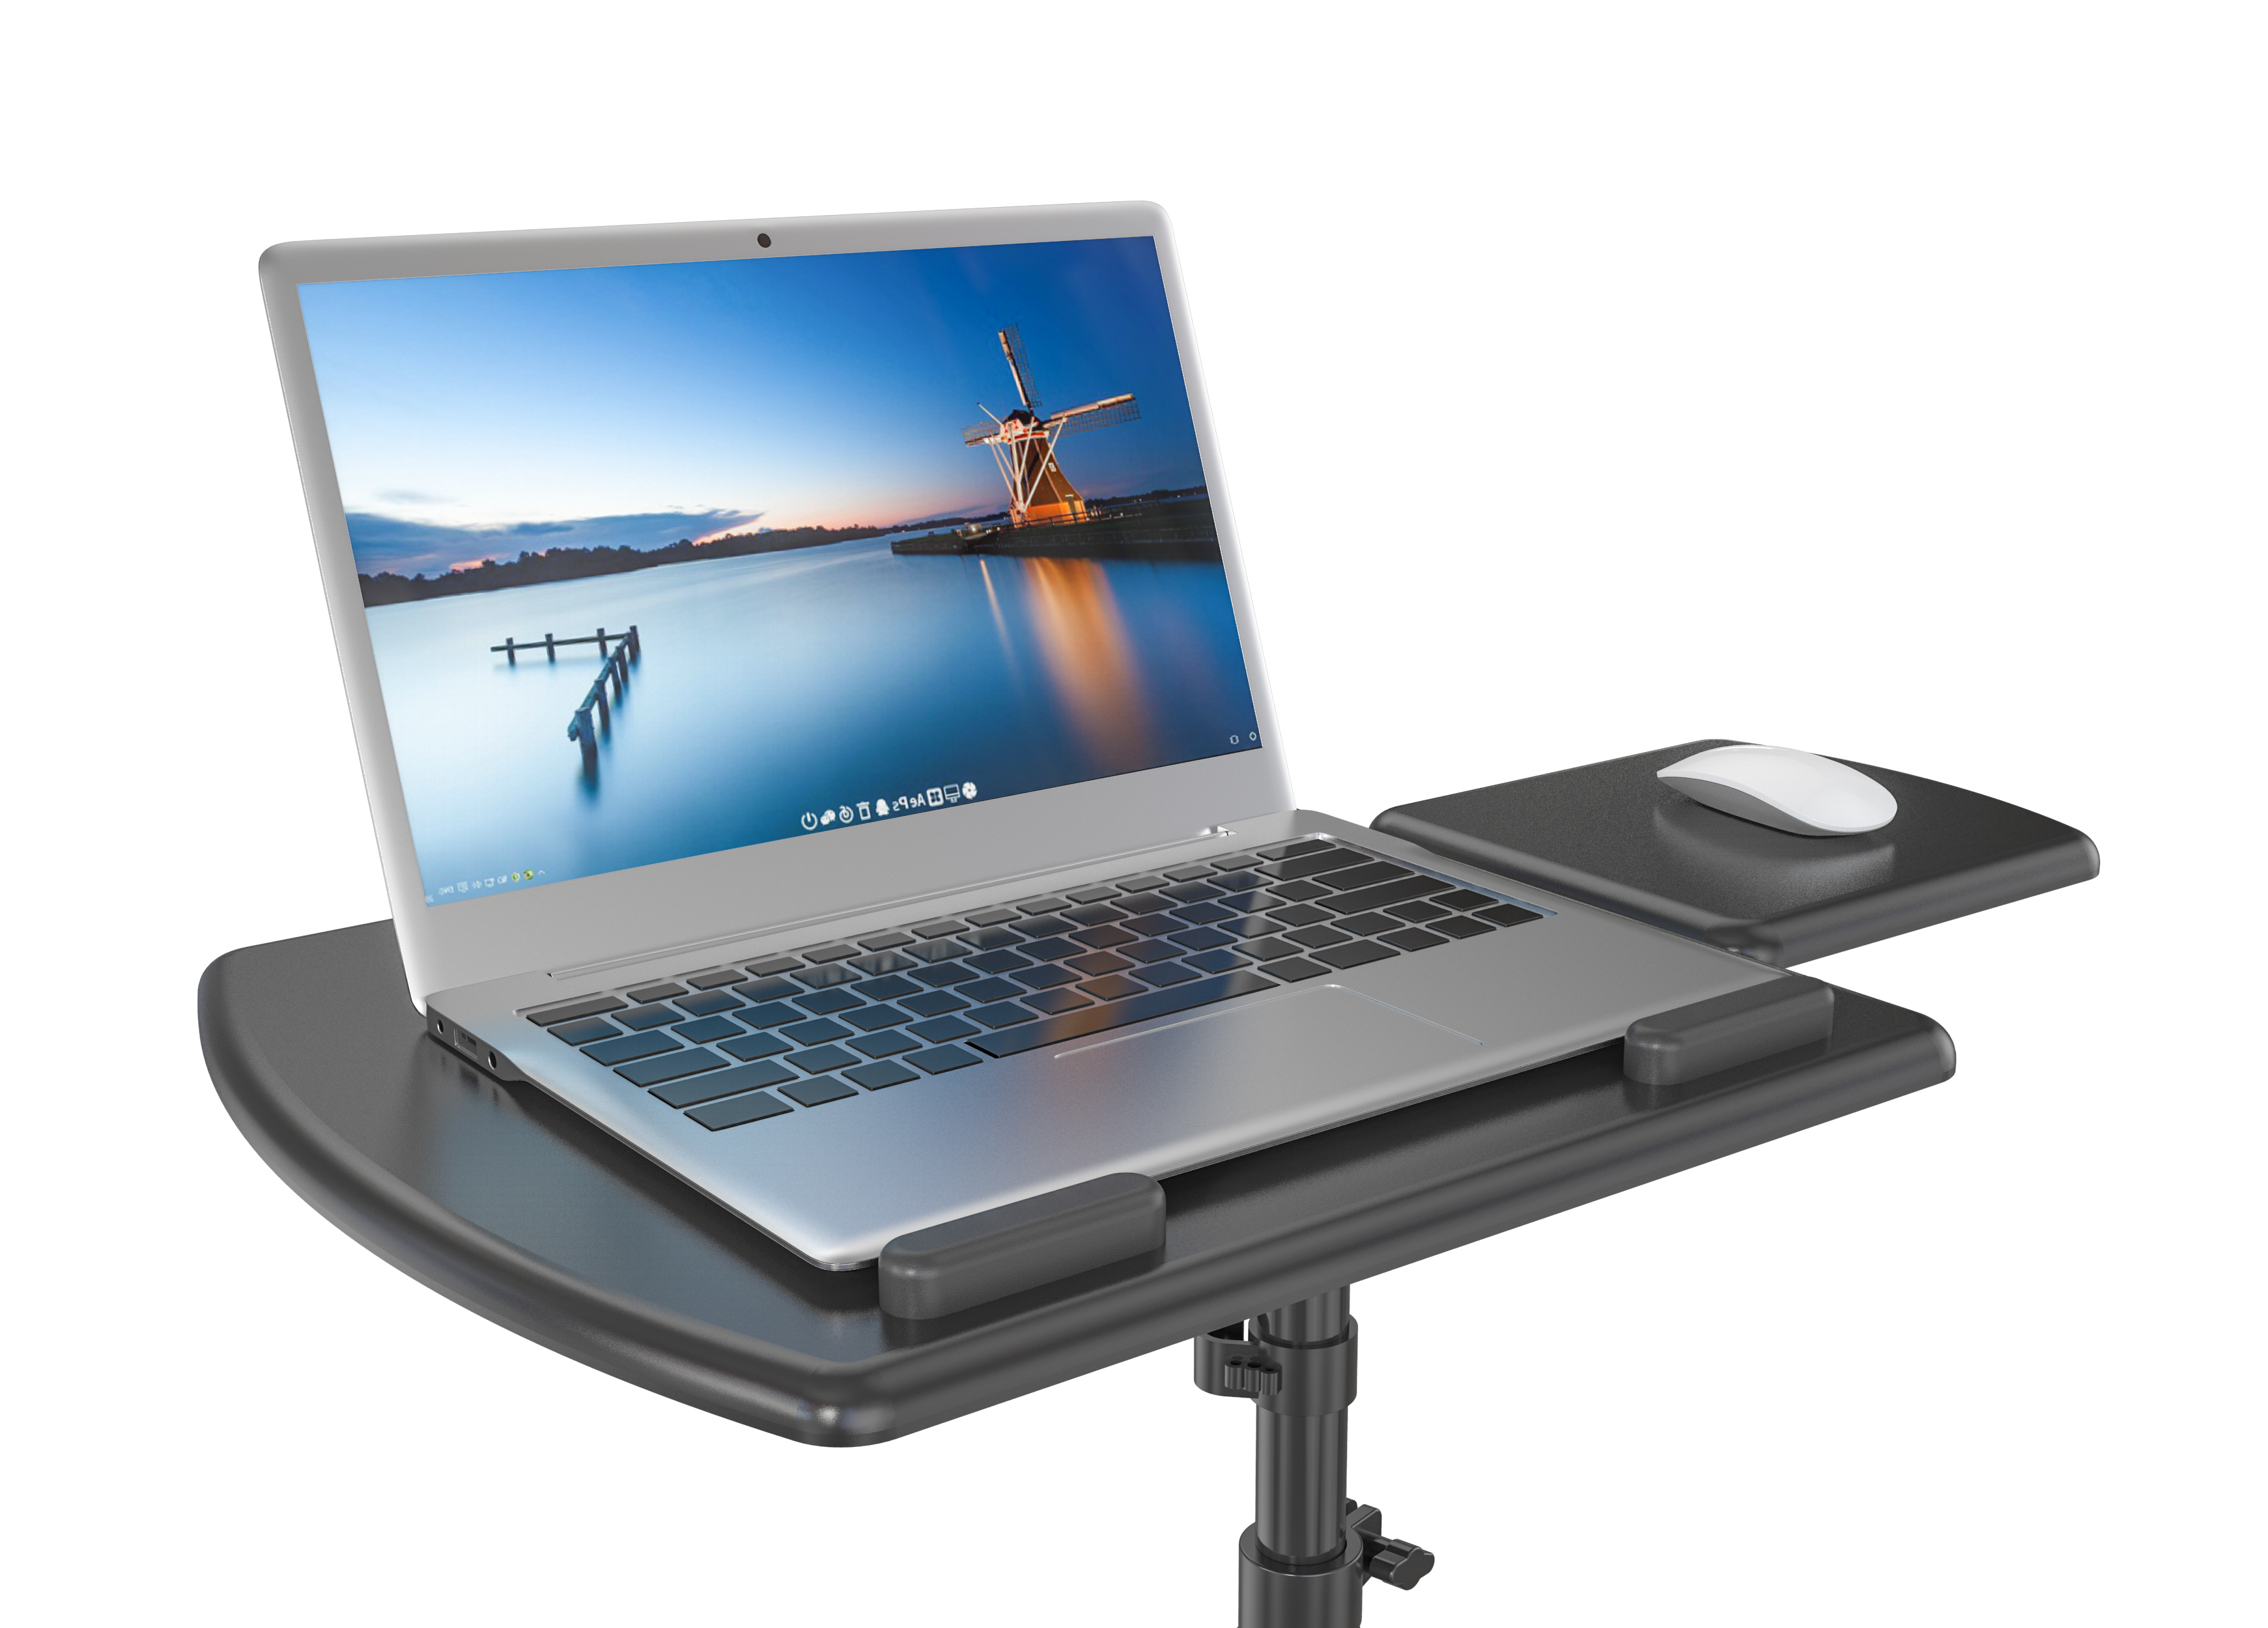 Mobile Manual Height Adjustable Office Desk VM-FDM102